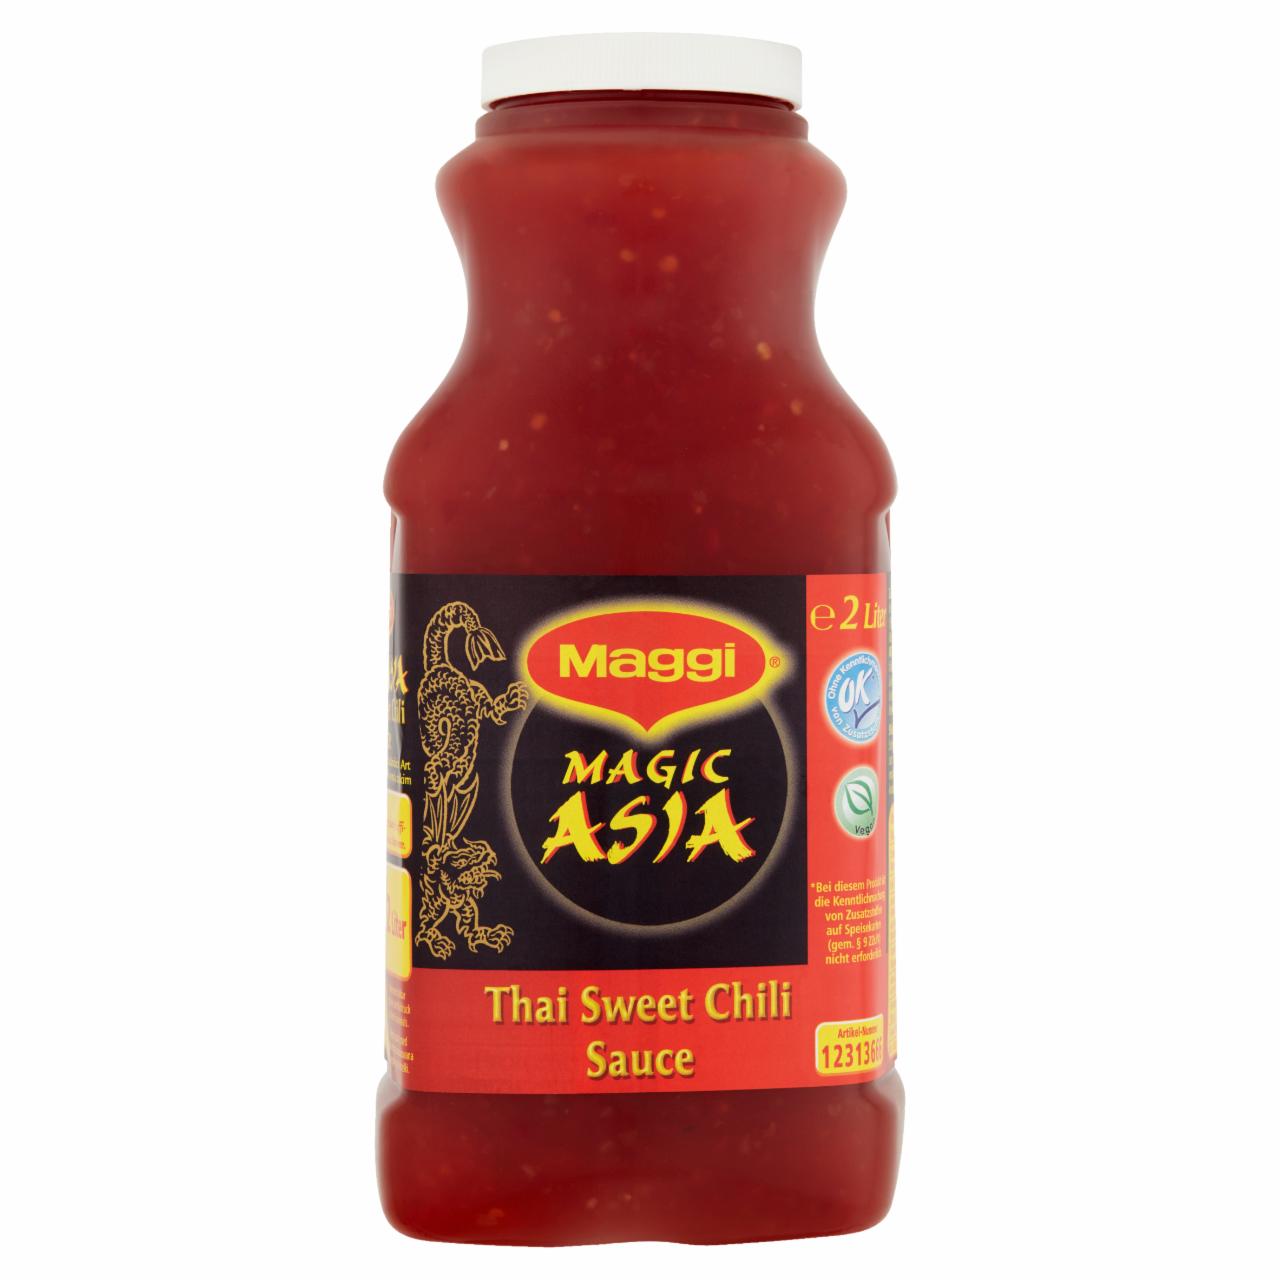 Zdjęcia - Maggi Magic Asia Sos słodko-kwaśny chili w stylu tajskim 2 l